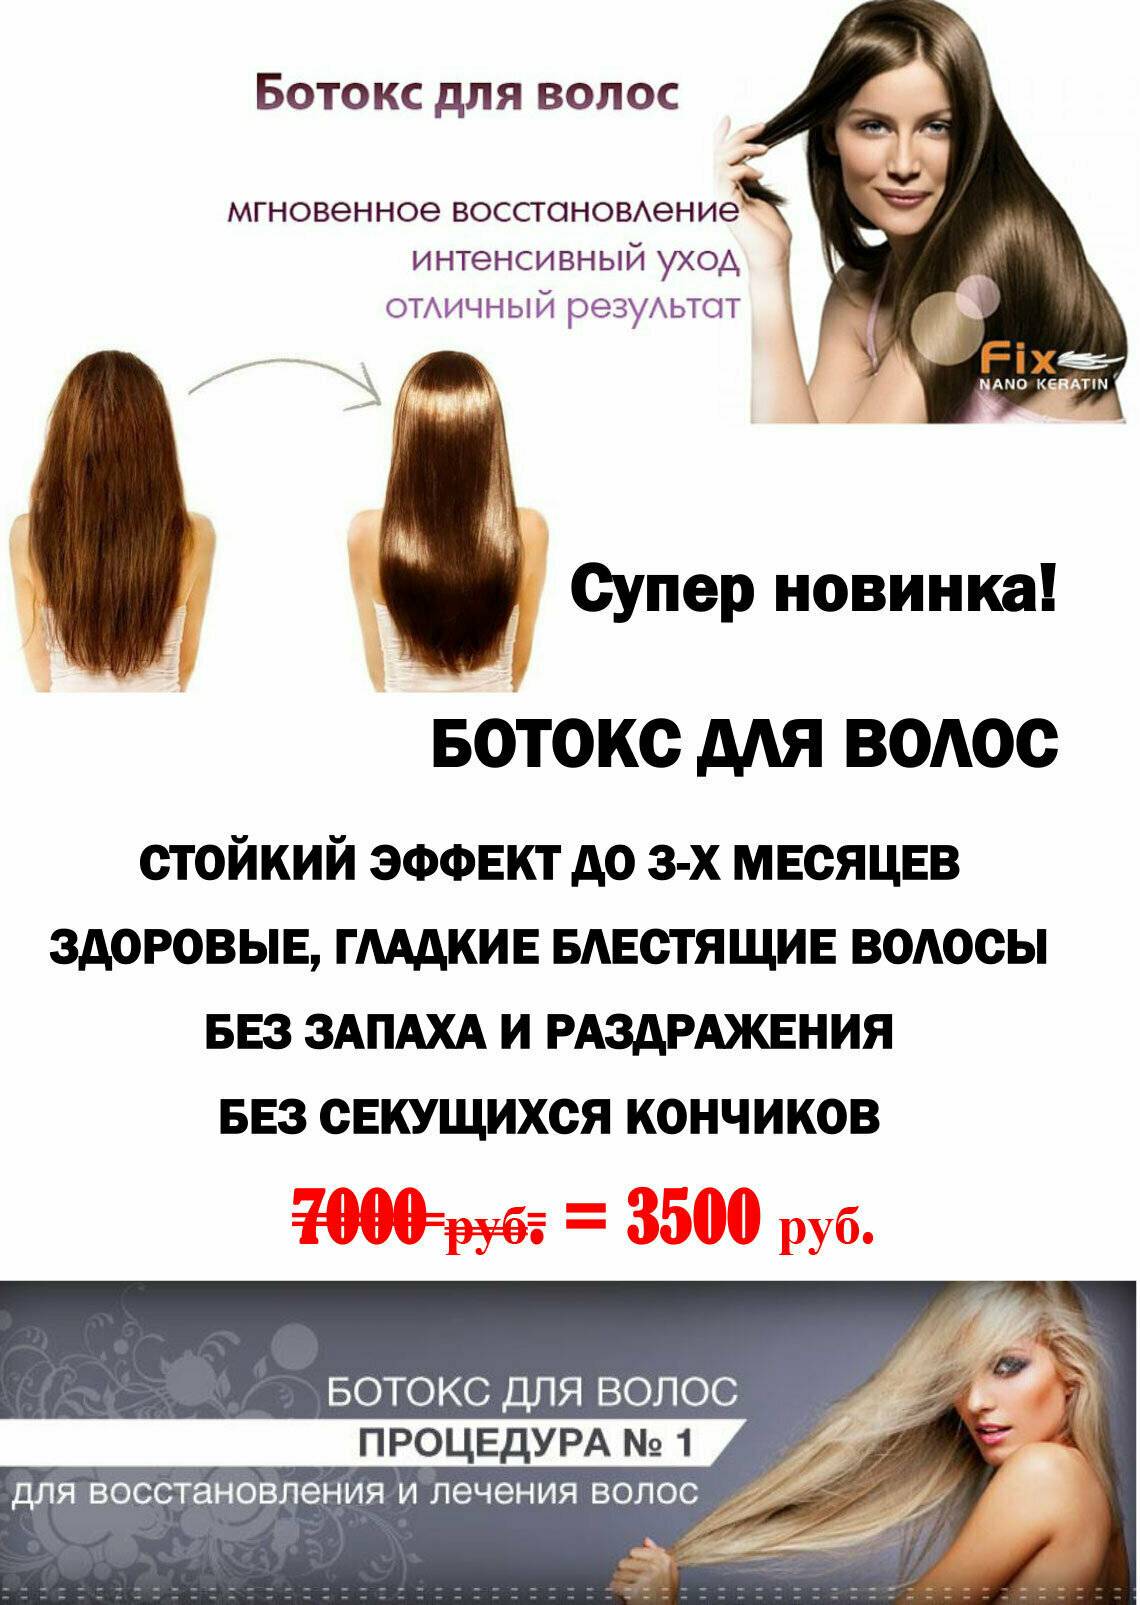 Ботокс для волос: описание, показания и свойства ✄ modna pricha